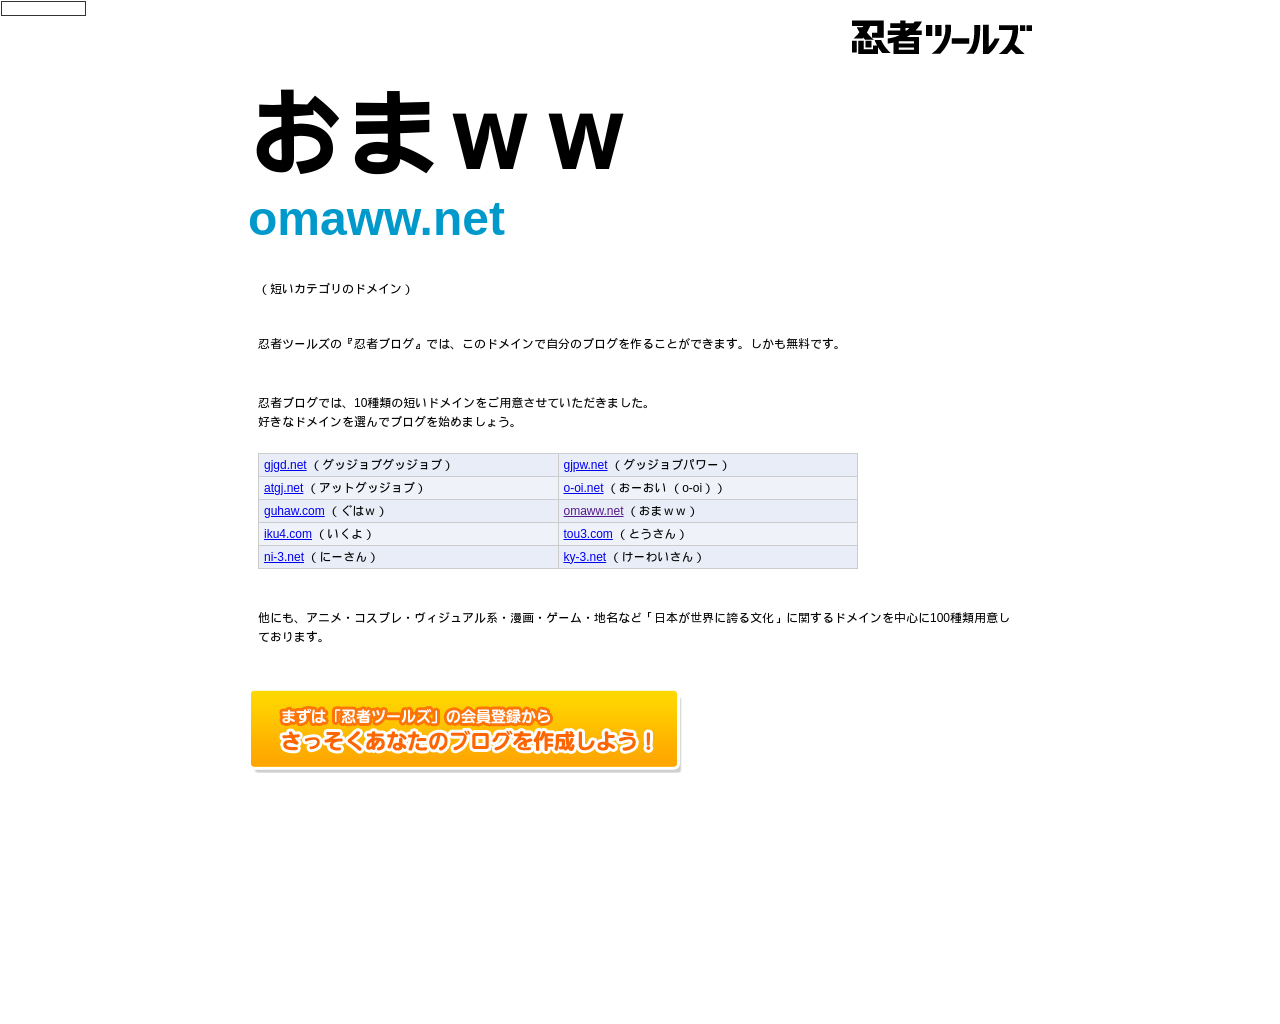 omaww.net